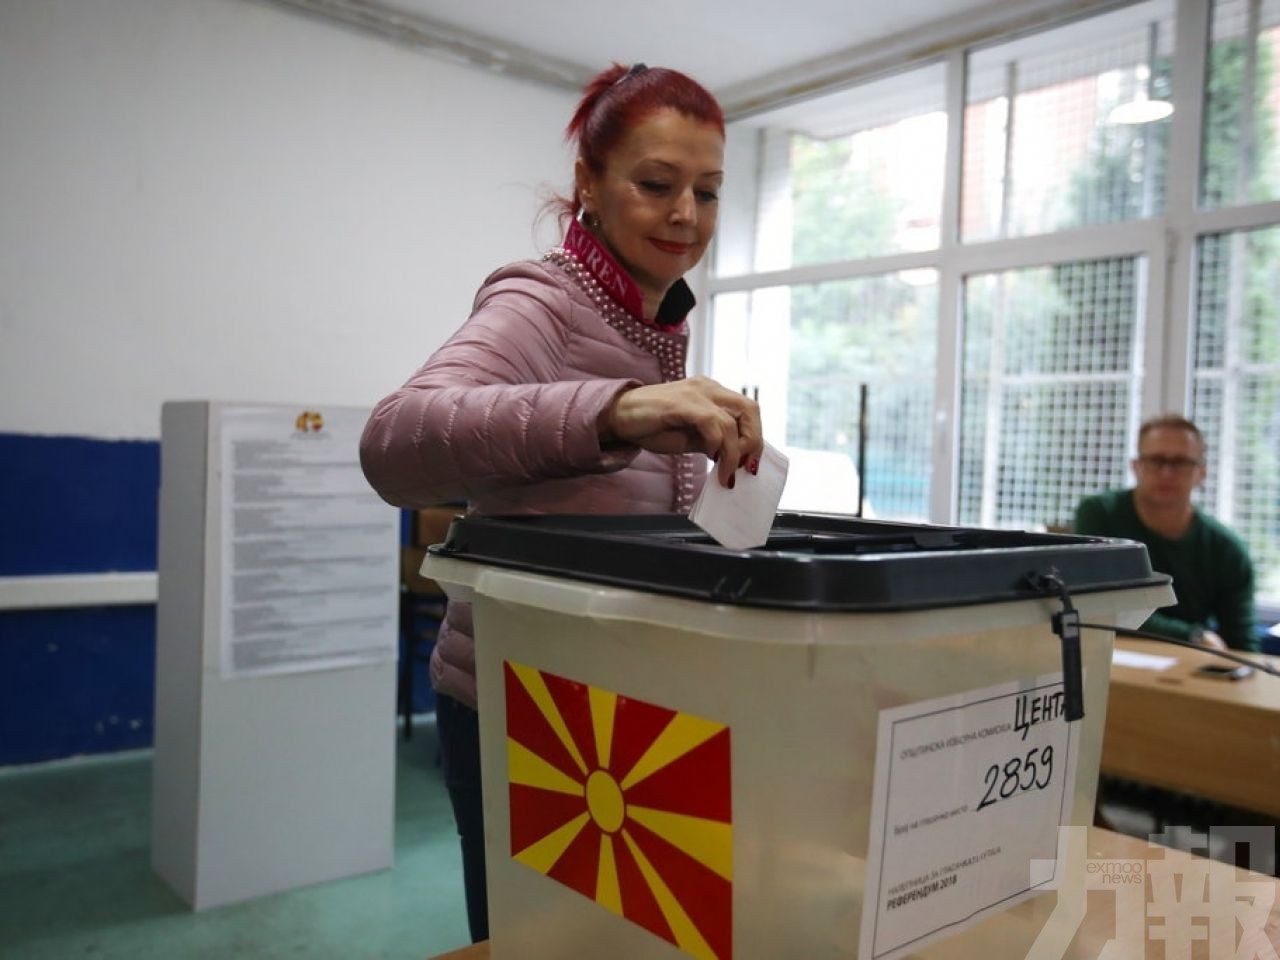 馬其頓今公投「更改國名」